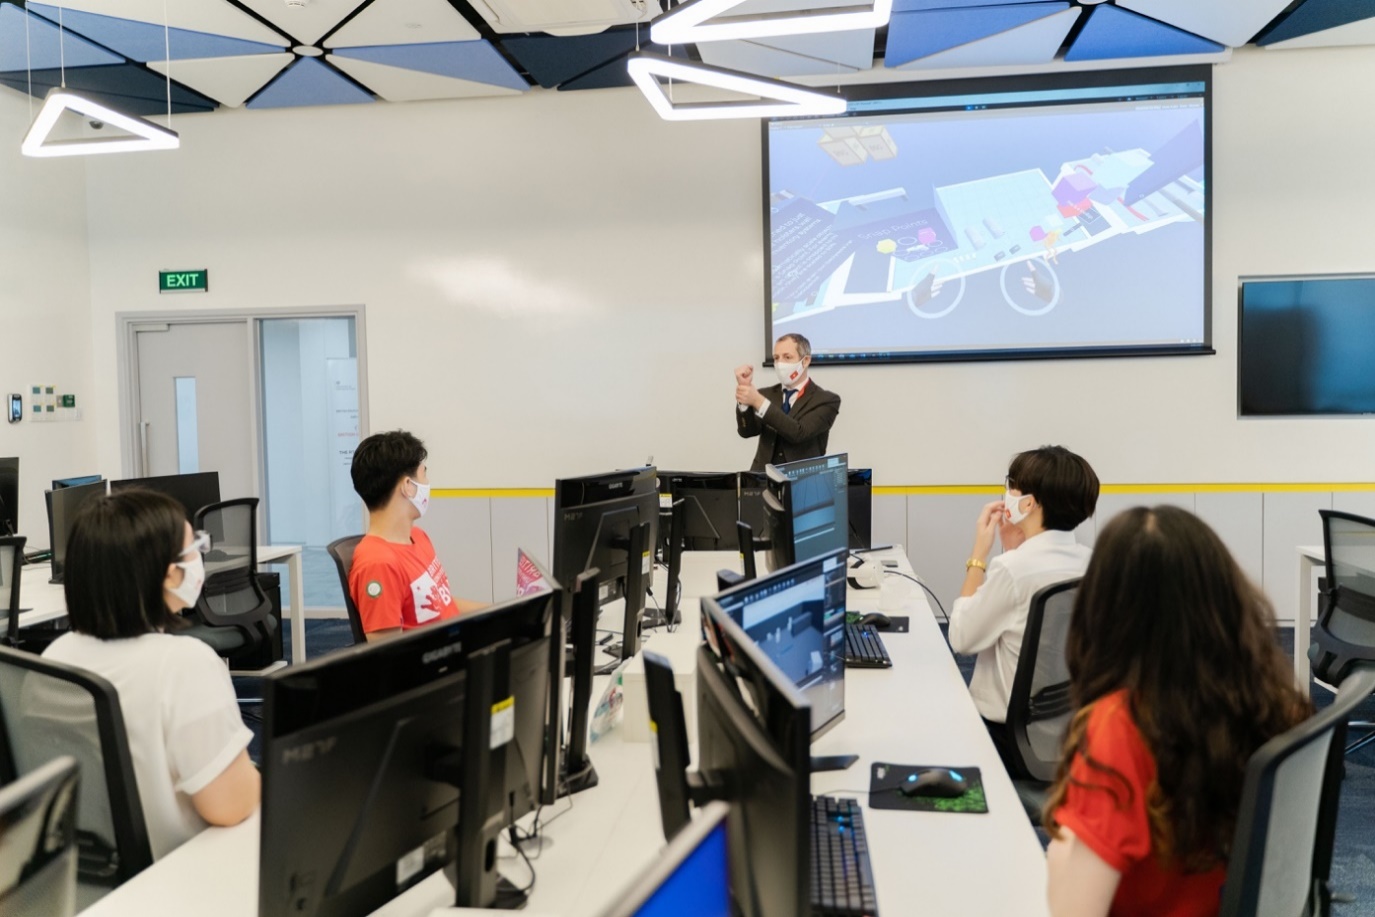 BUV xây dựng theo hình mẫu trường đại học quốc tế kết hợp giữa công nghệ cao, tăng cường tính tương tác, kết nối giữa giảng viên - sinh viên.